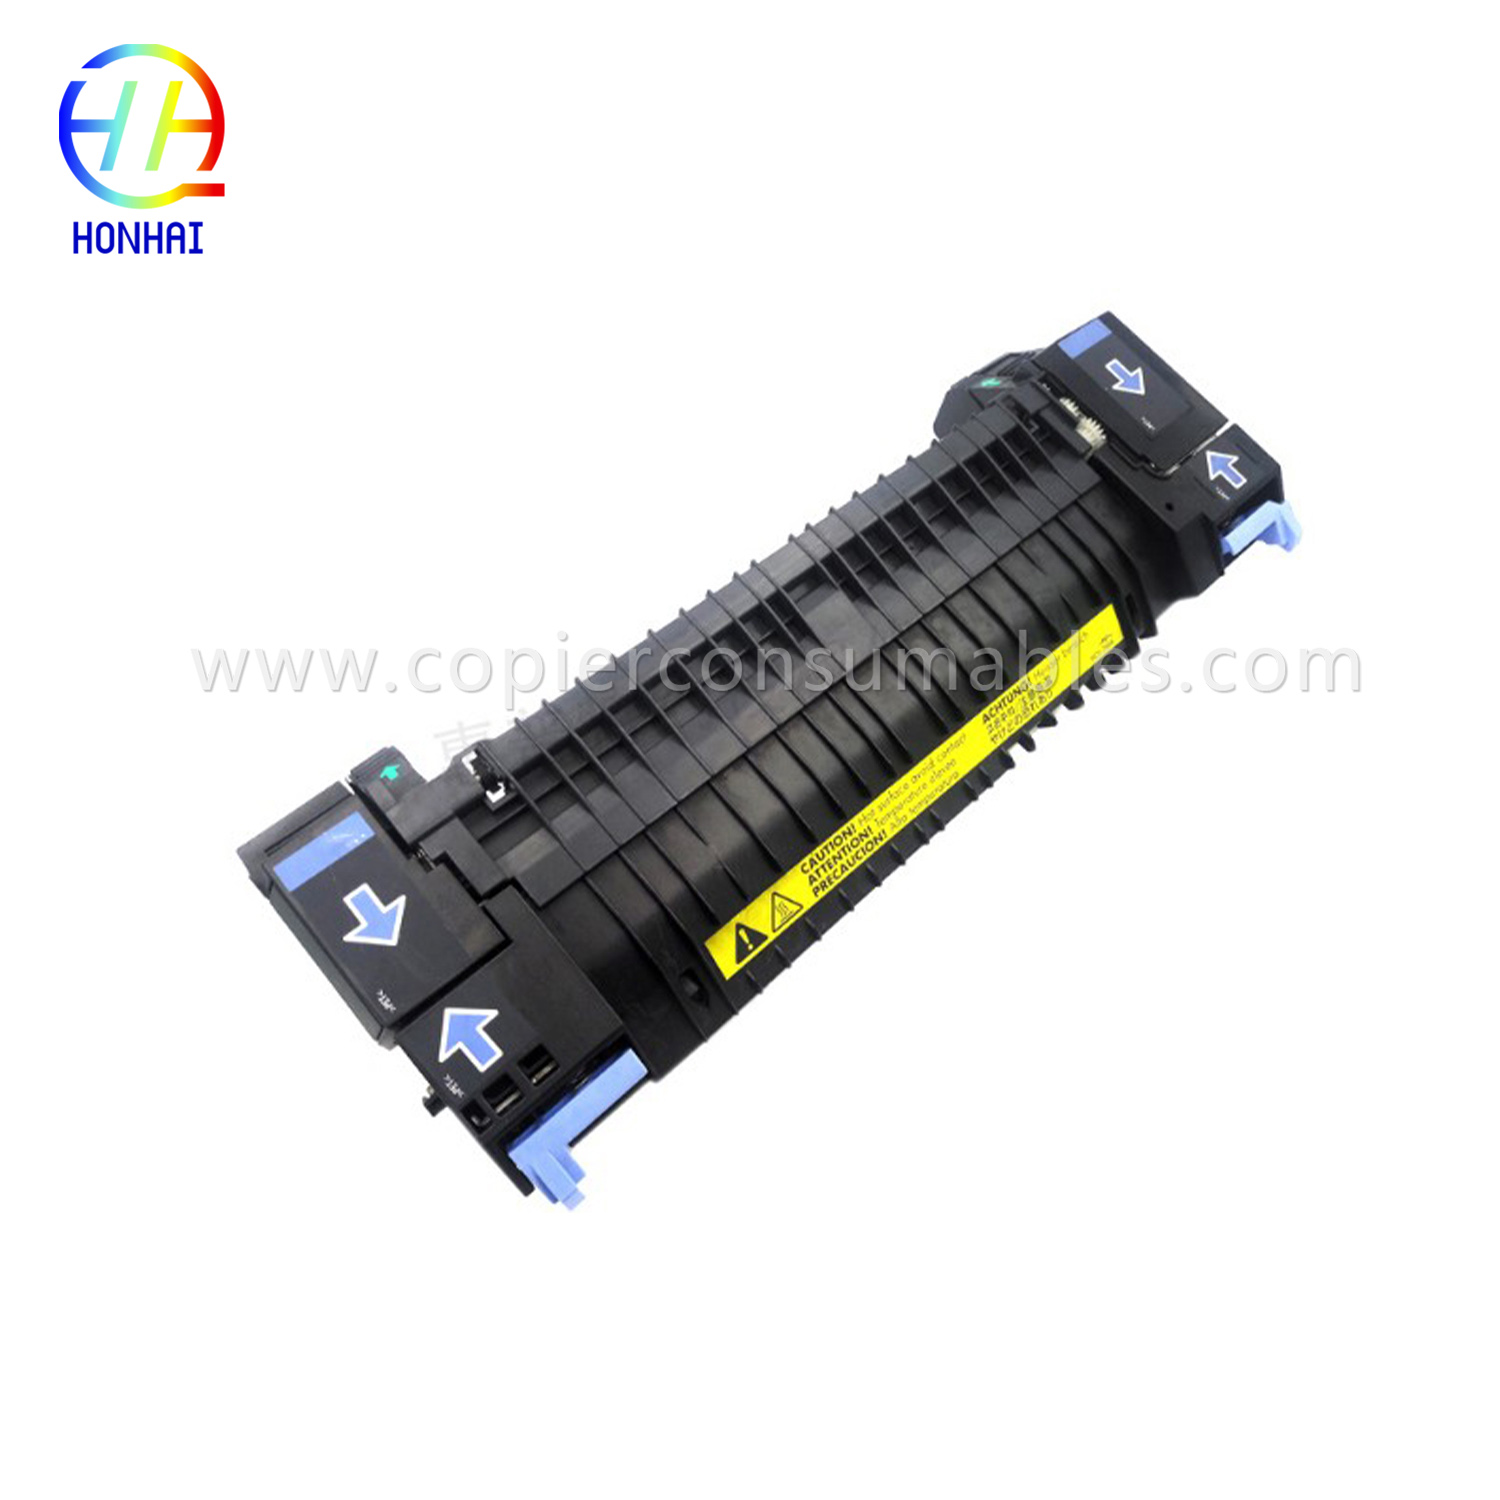 Fuser Assembly kanggo HP Color LaserJet 2700 3000 3600 3800 CP3505 (RM1-4348 RM1-2763 RM1-2665) 拷贝